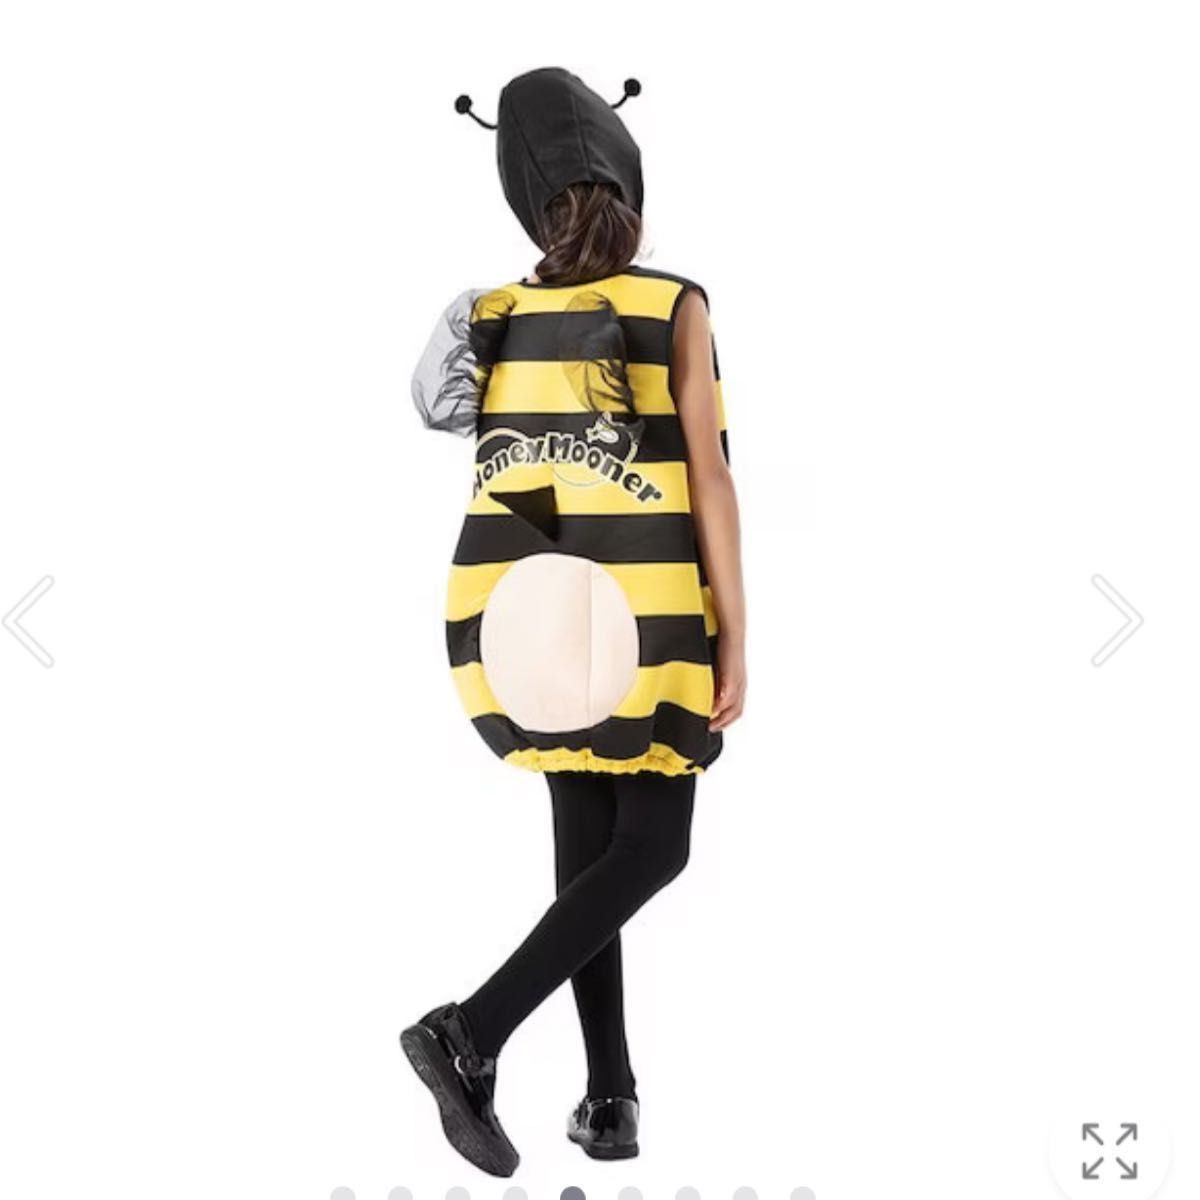 ハロウィン衣装 大人用 子供用女性用 昆虫 ミツバチに変身 コスプレ衣装 コスチューム